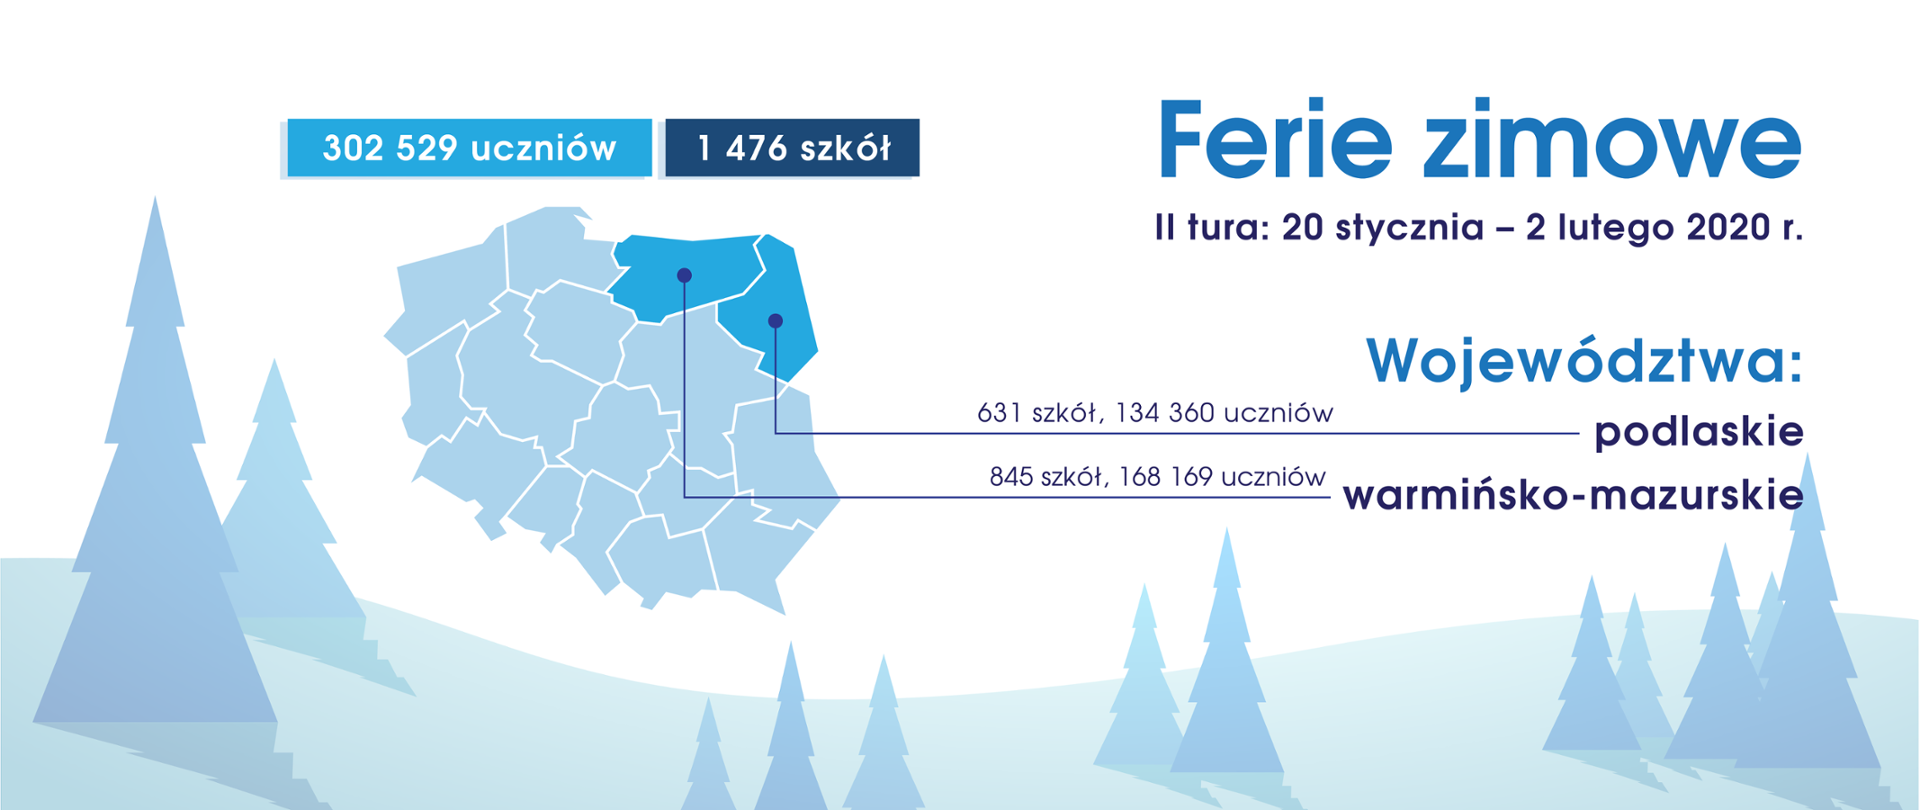 Ferie zimowe – II tura: 20 stycznia – 2 lutego 2020 r. Grafika przedstawiająca mapę Polski, zimowy krajobraz oraz informację o II turze ferii zimowych dla województw: podlaskiego i warmińsko-mazurskiego.